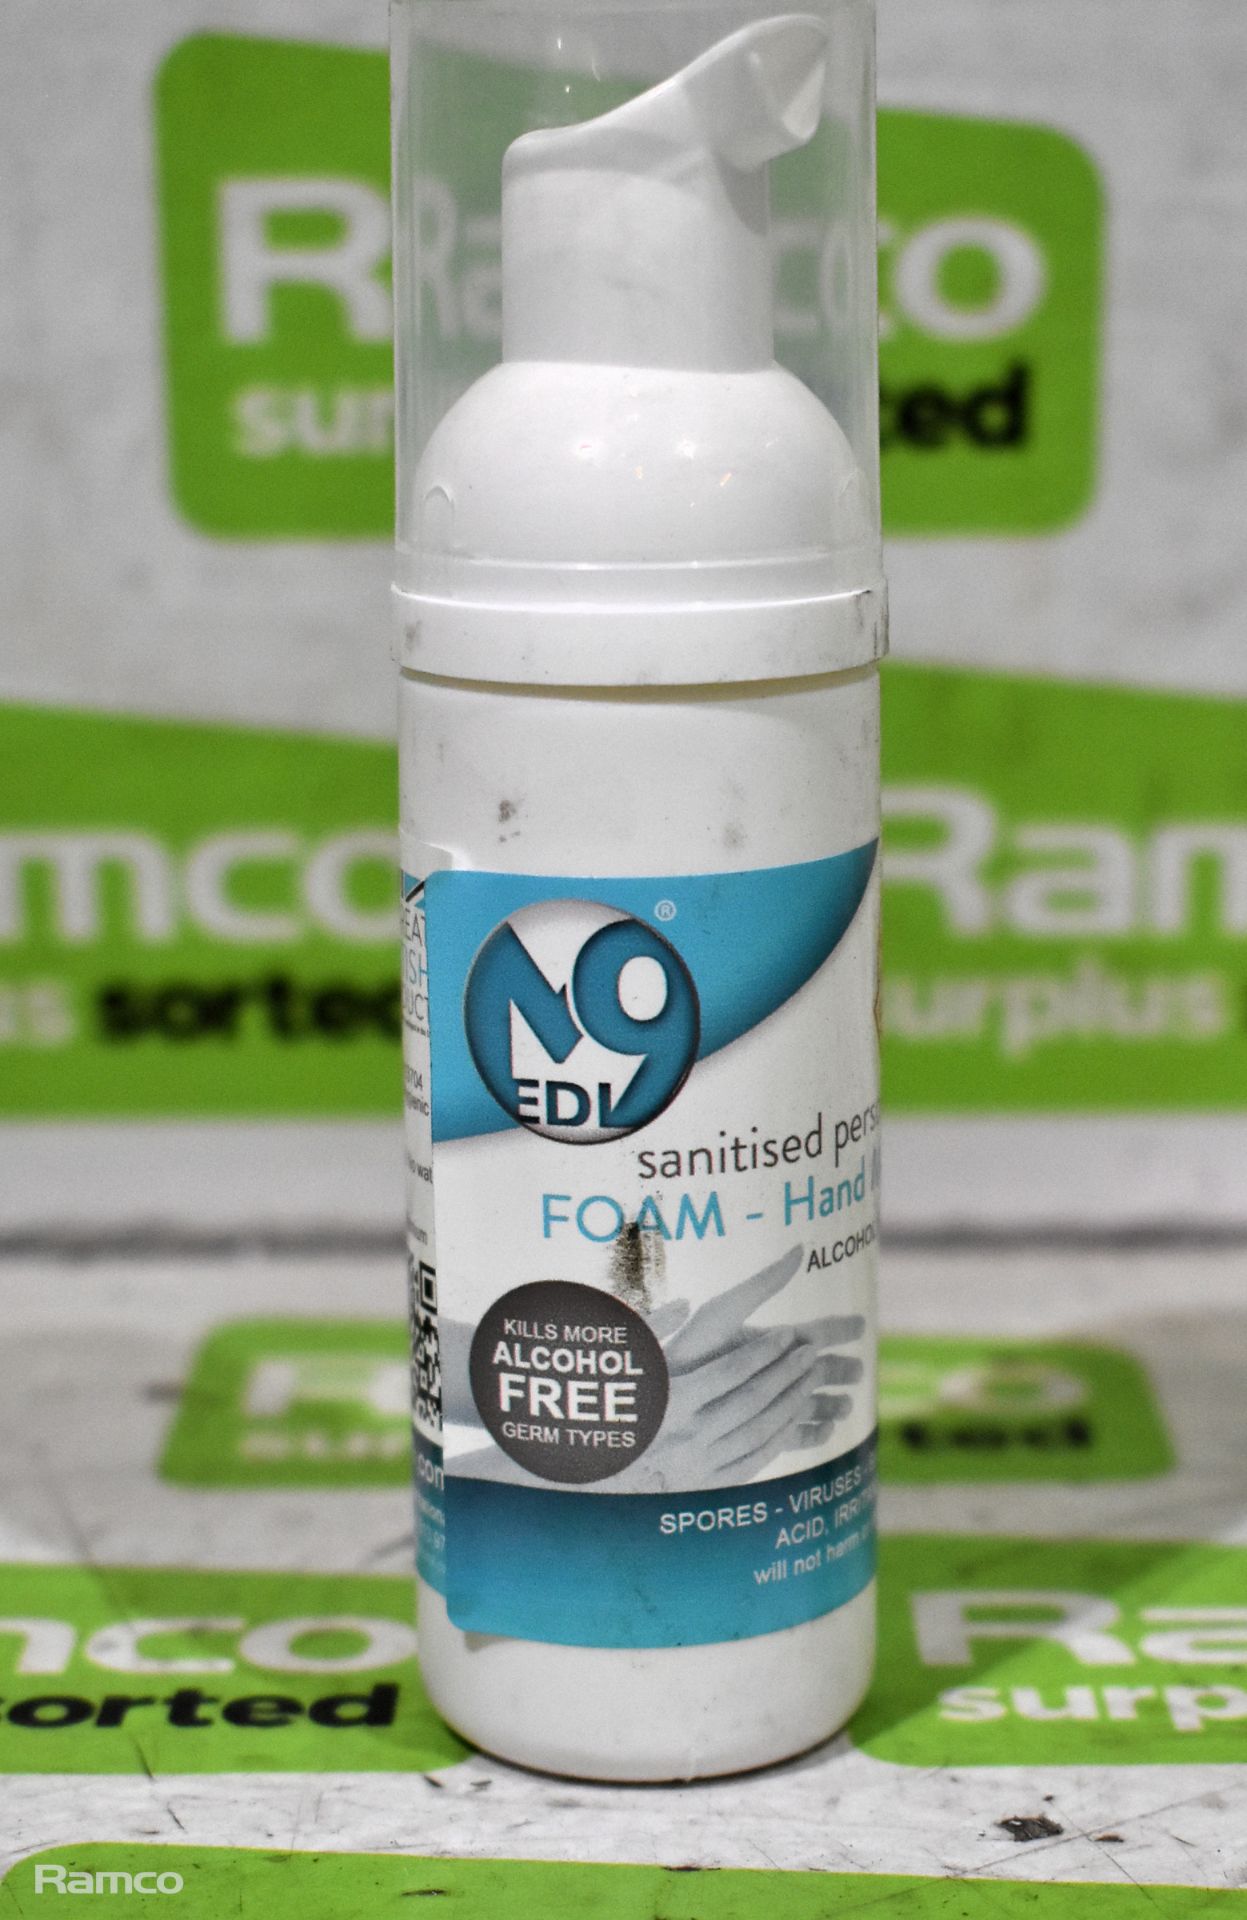 39x bottles of Medi9 alcohol free foam hand sanitiser - 50ml bottle - Image 3 of 4